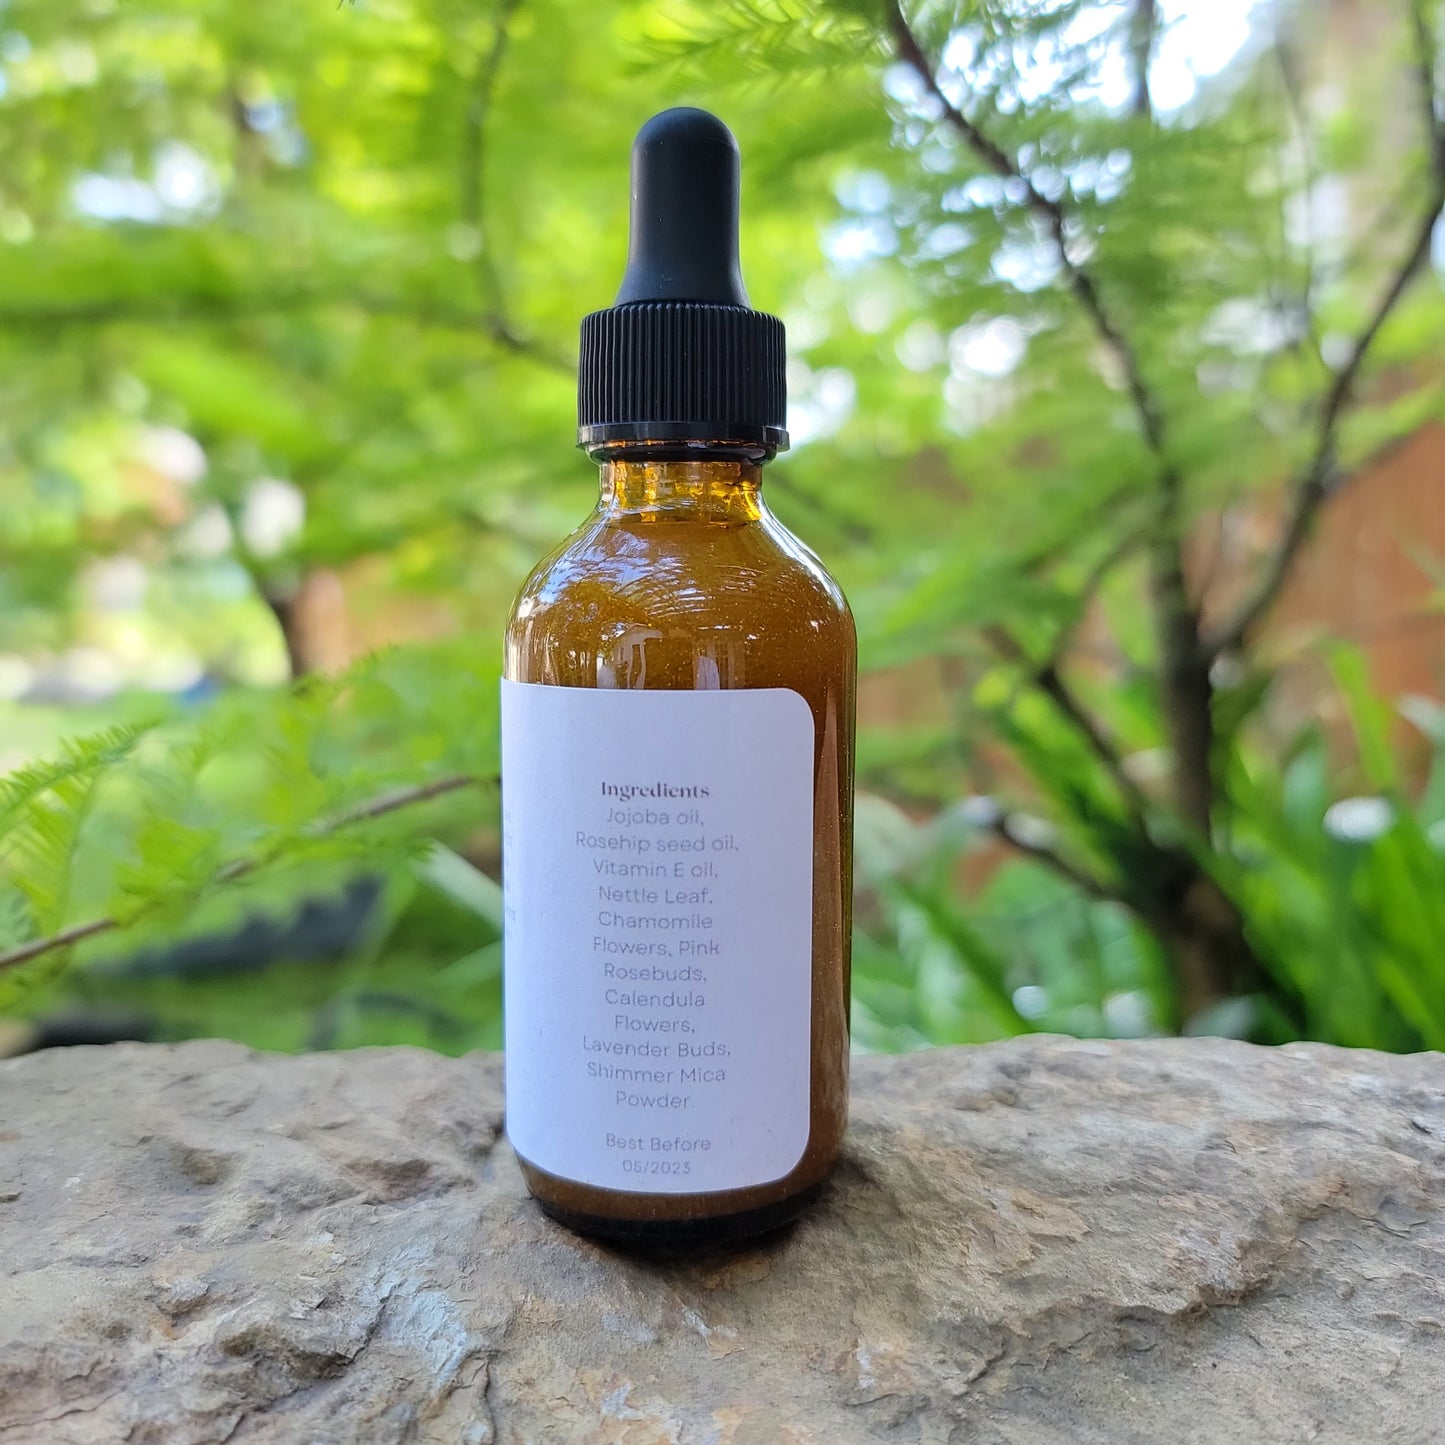 Herbal Magic Face Oil - 2 oz